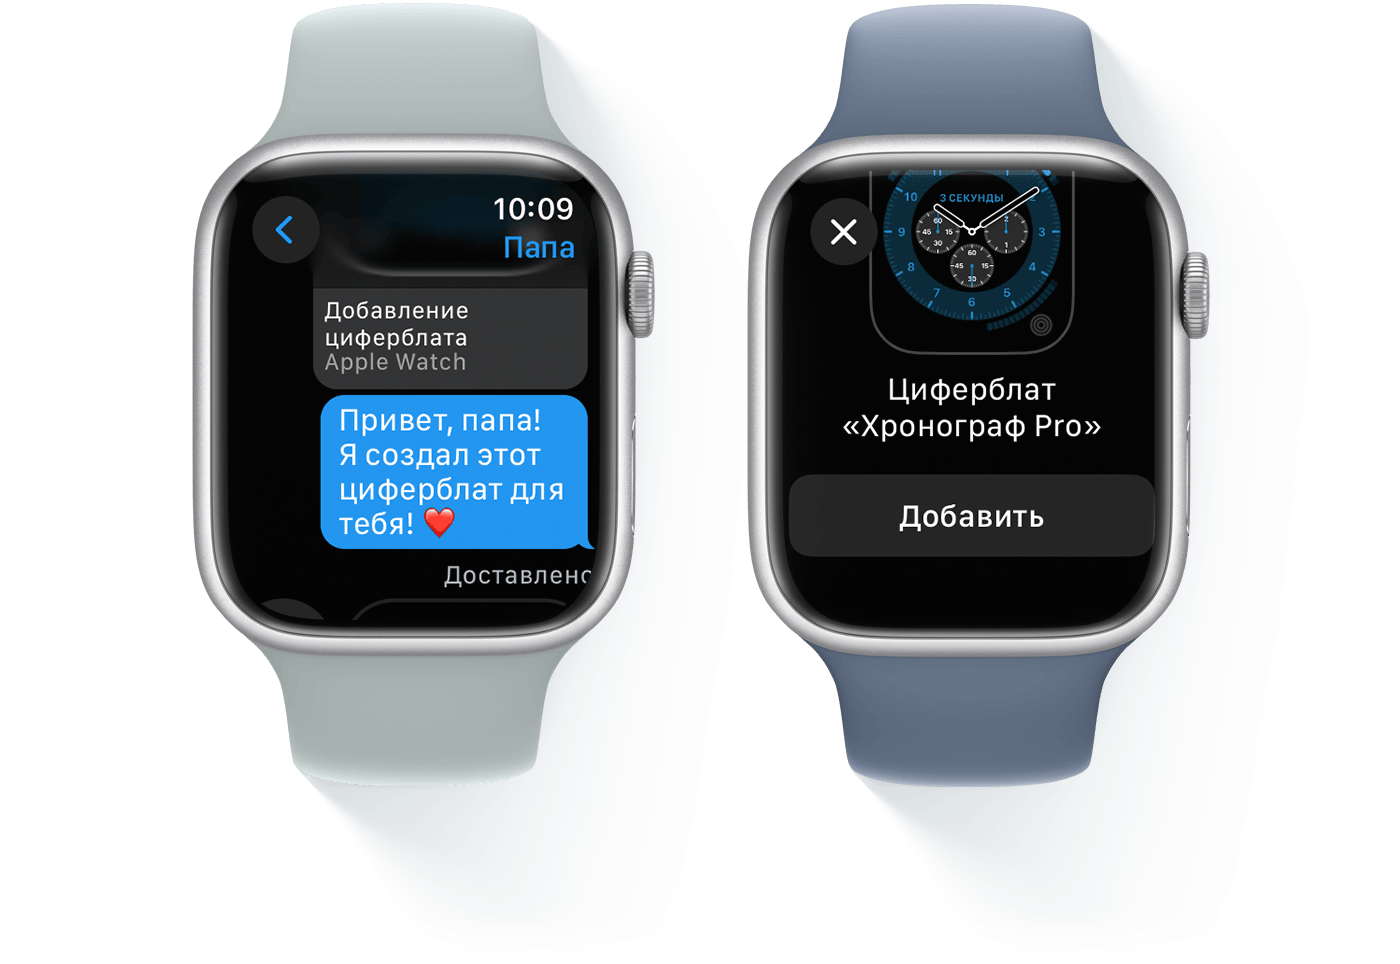 Два устройства Apple Watch, на одном из которых отображается разговор, а на другом — циферблат «Хронограф Pro»